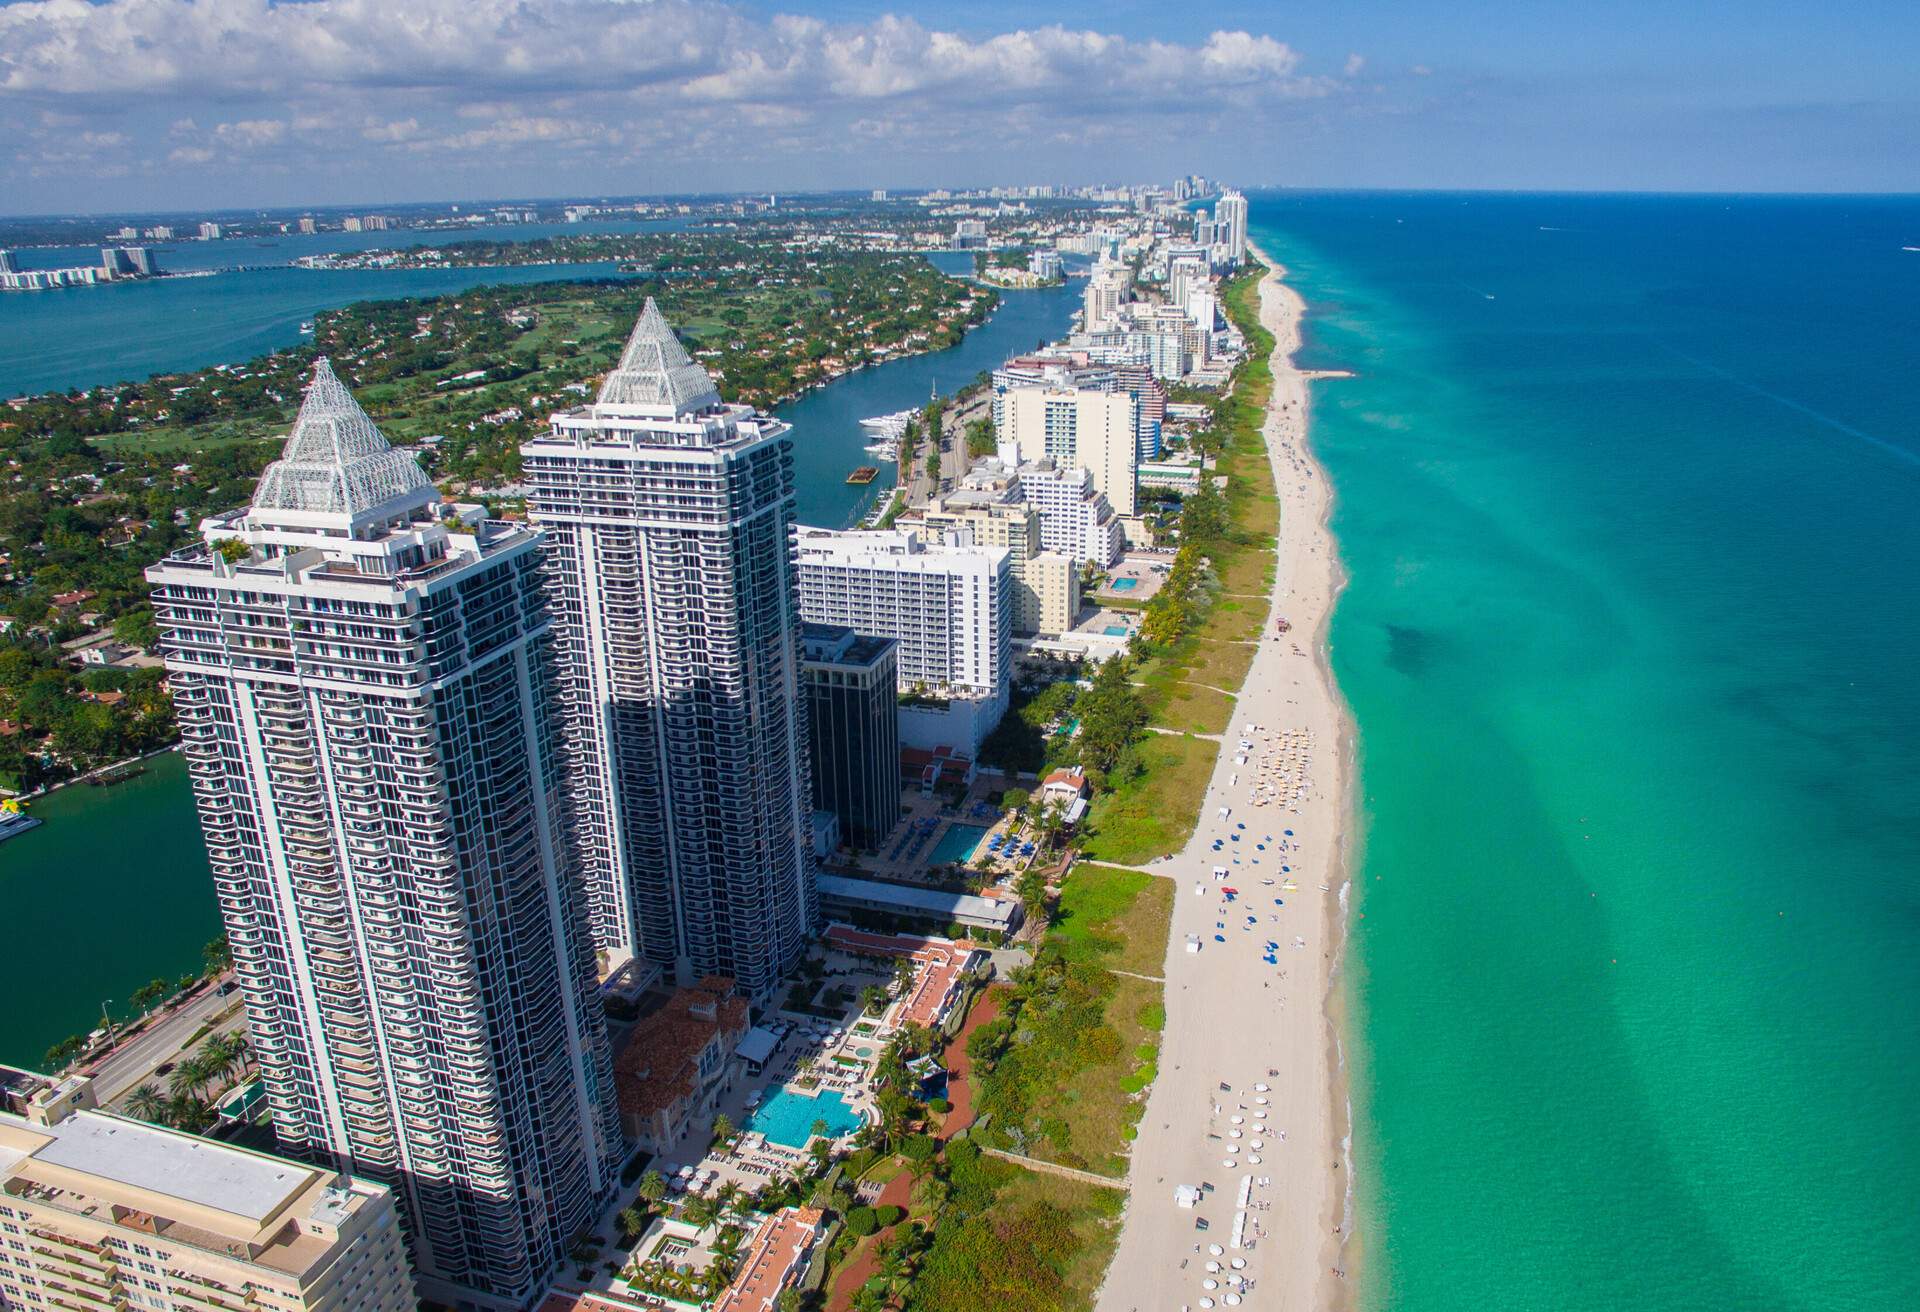 South Beach, Miami Beach. Florida. Aerial view